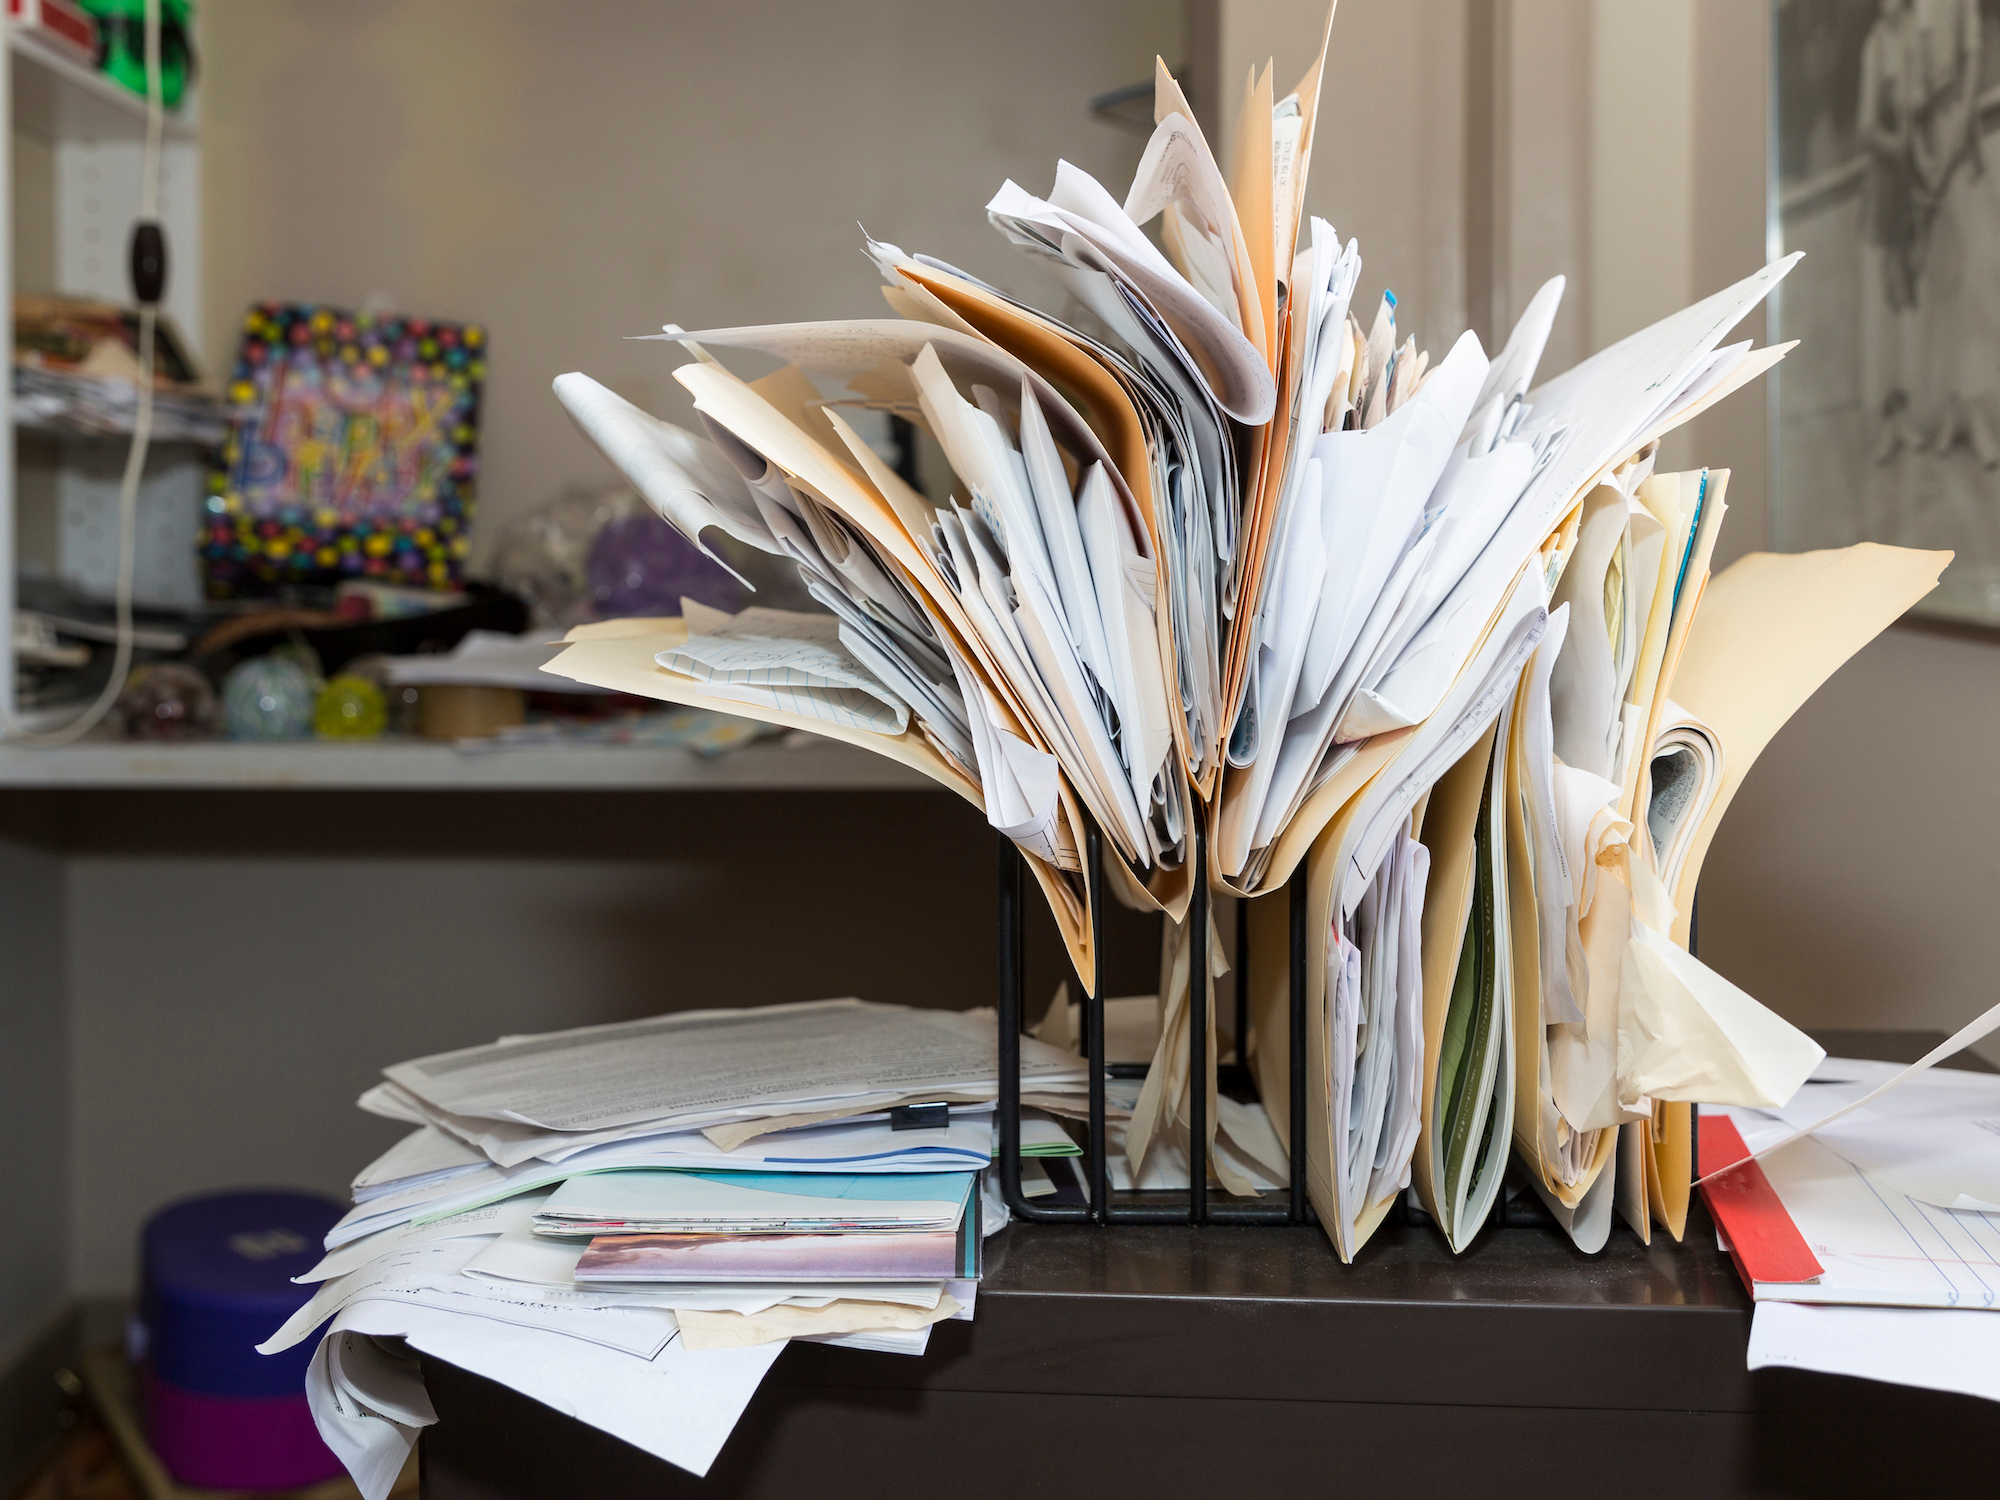 Office papers. Бумаги на столе. Много бумаг на столе. Много бумаги. Бумаги в беспорядке.